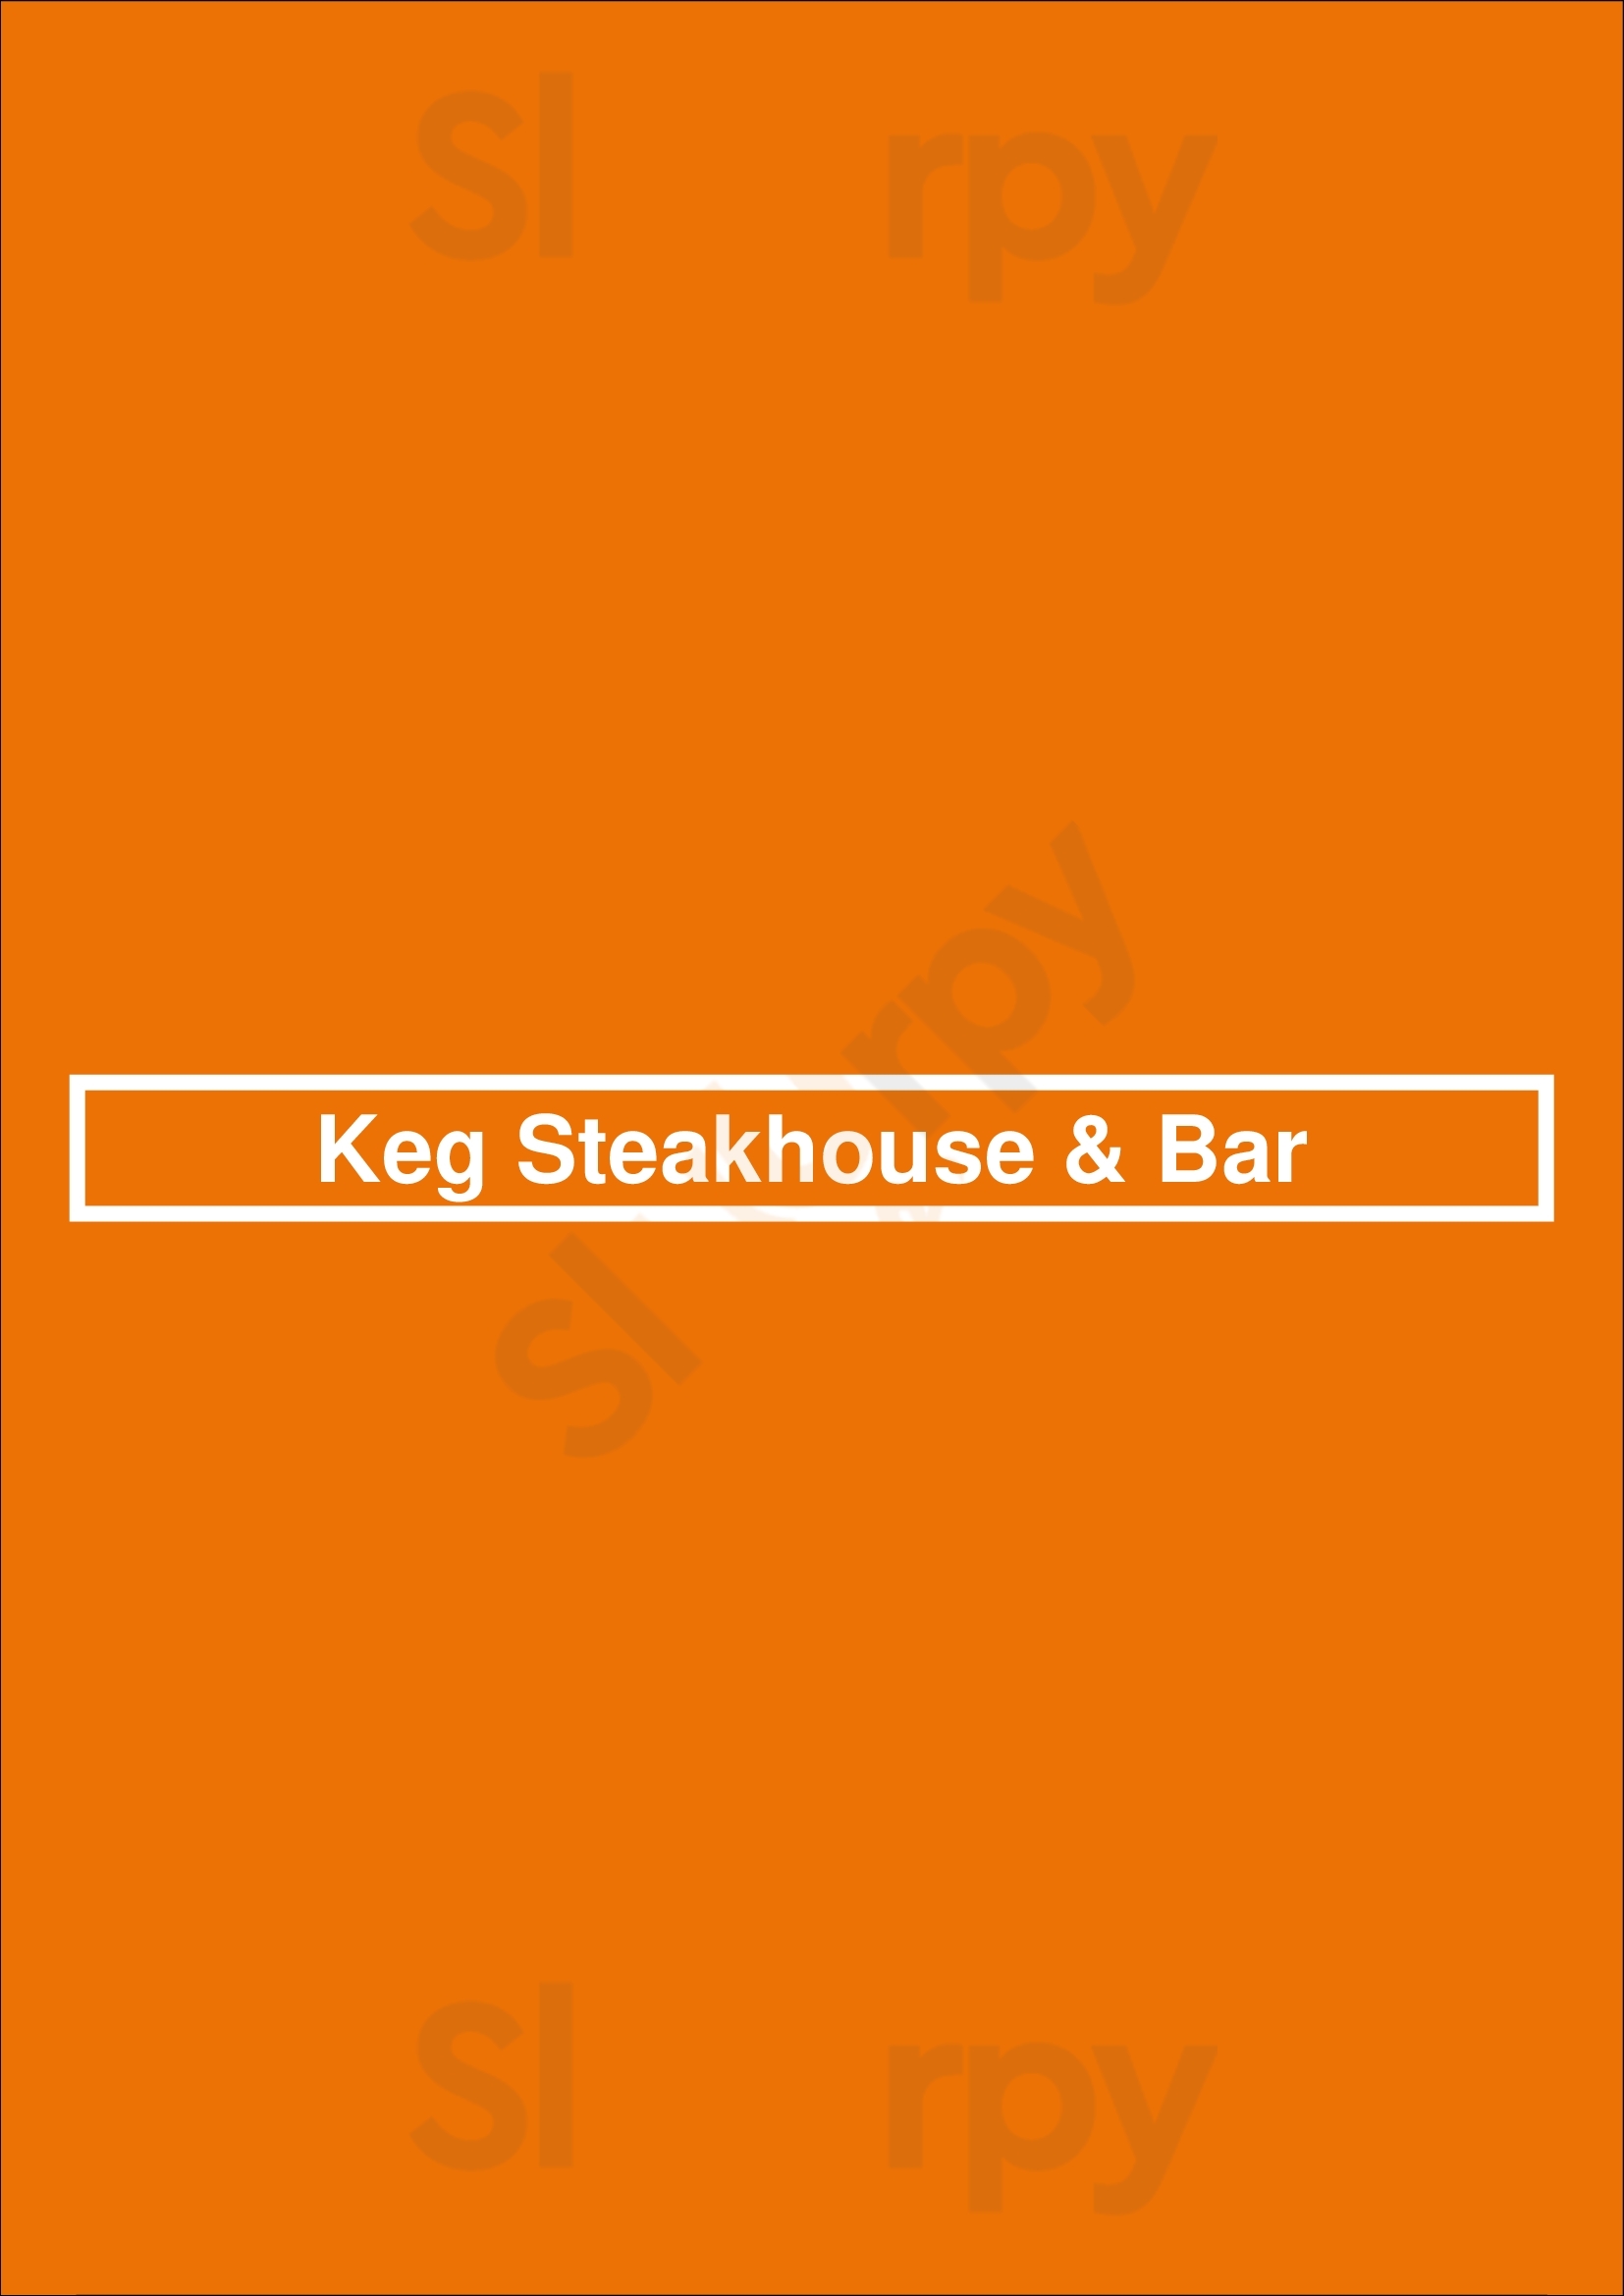 Keg Steakhouse & Bar Saskatoon Menu - 1